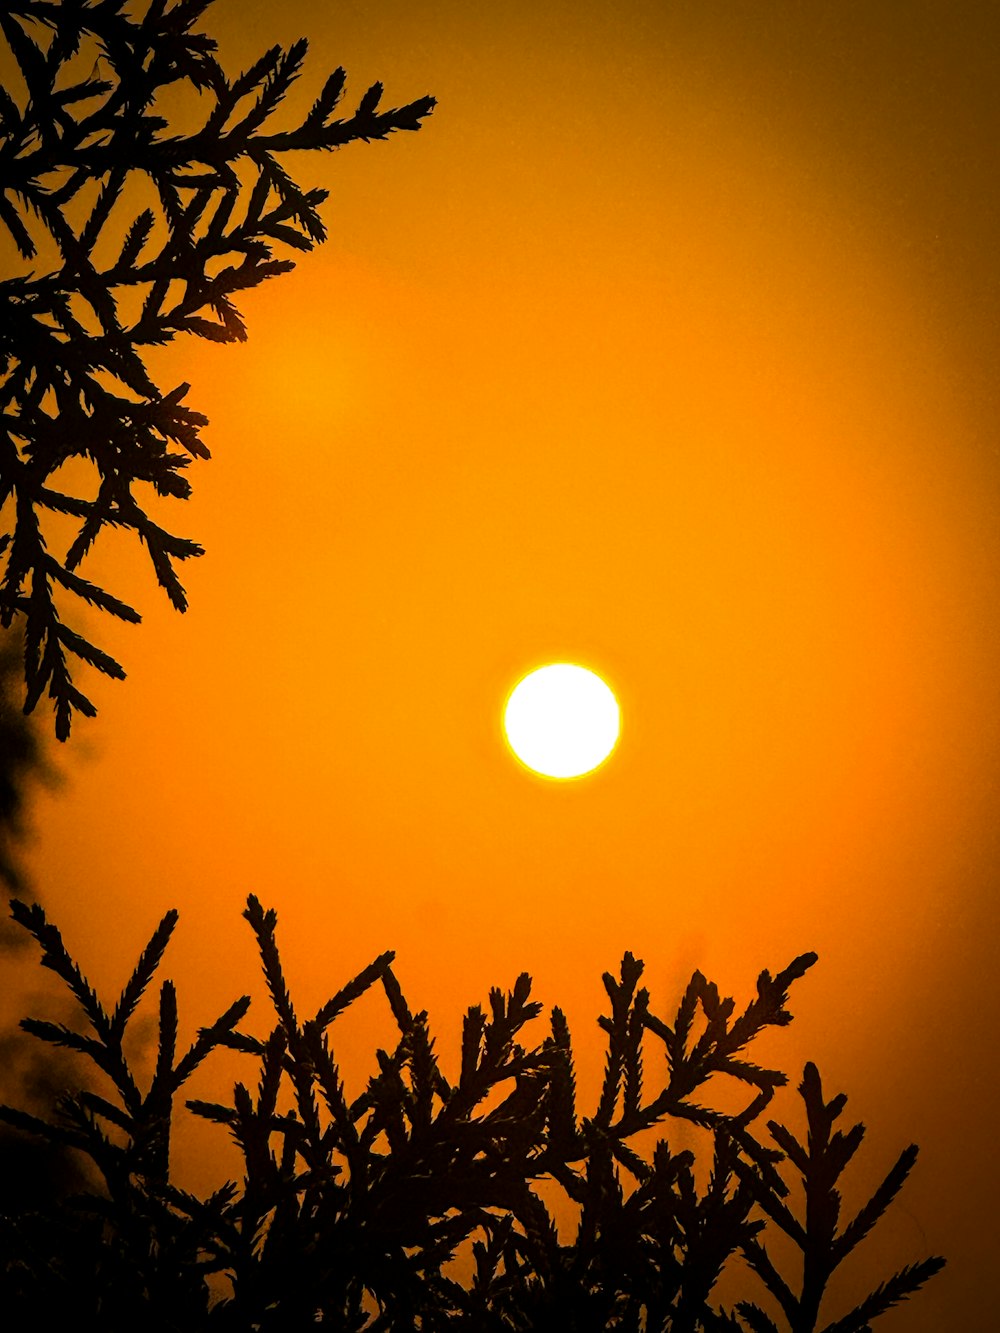 Le soleil se couche derrière les branches d’un arbre